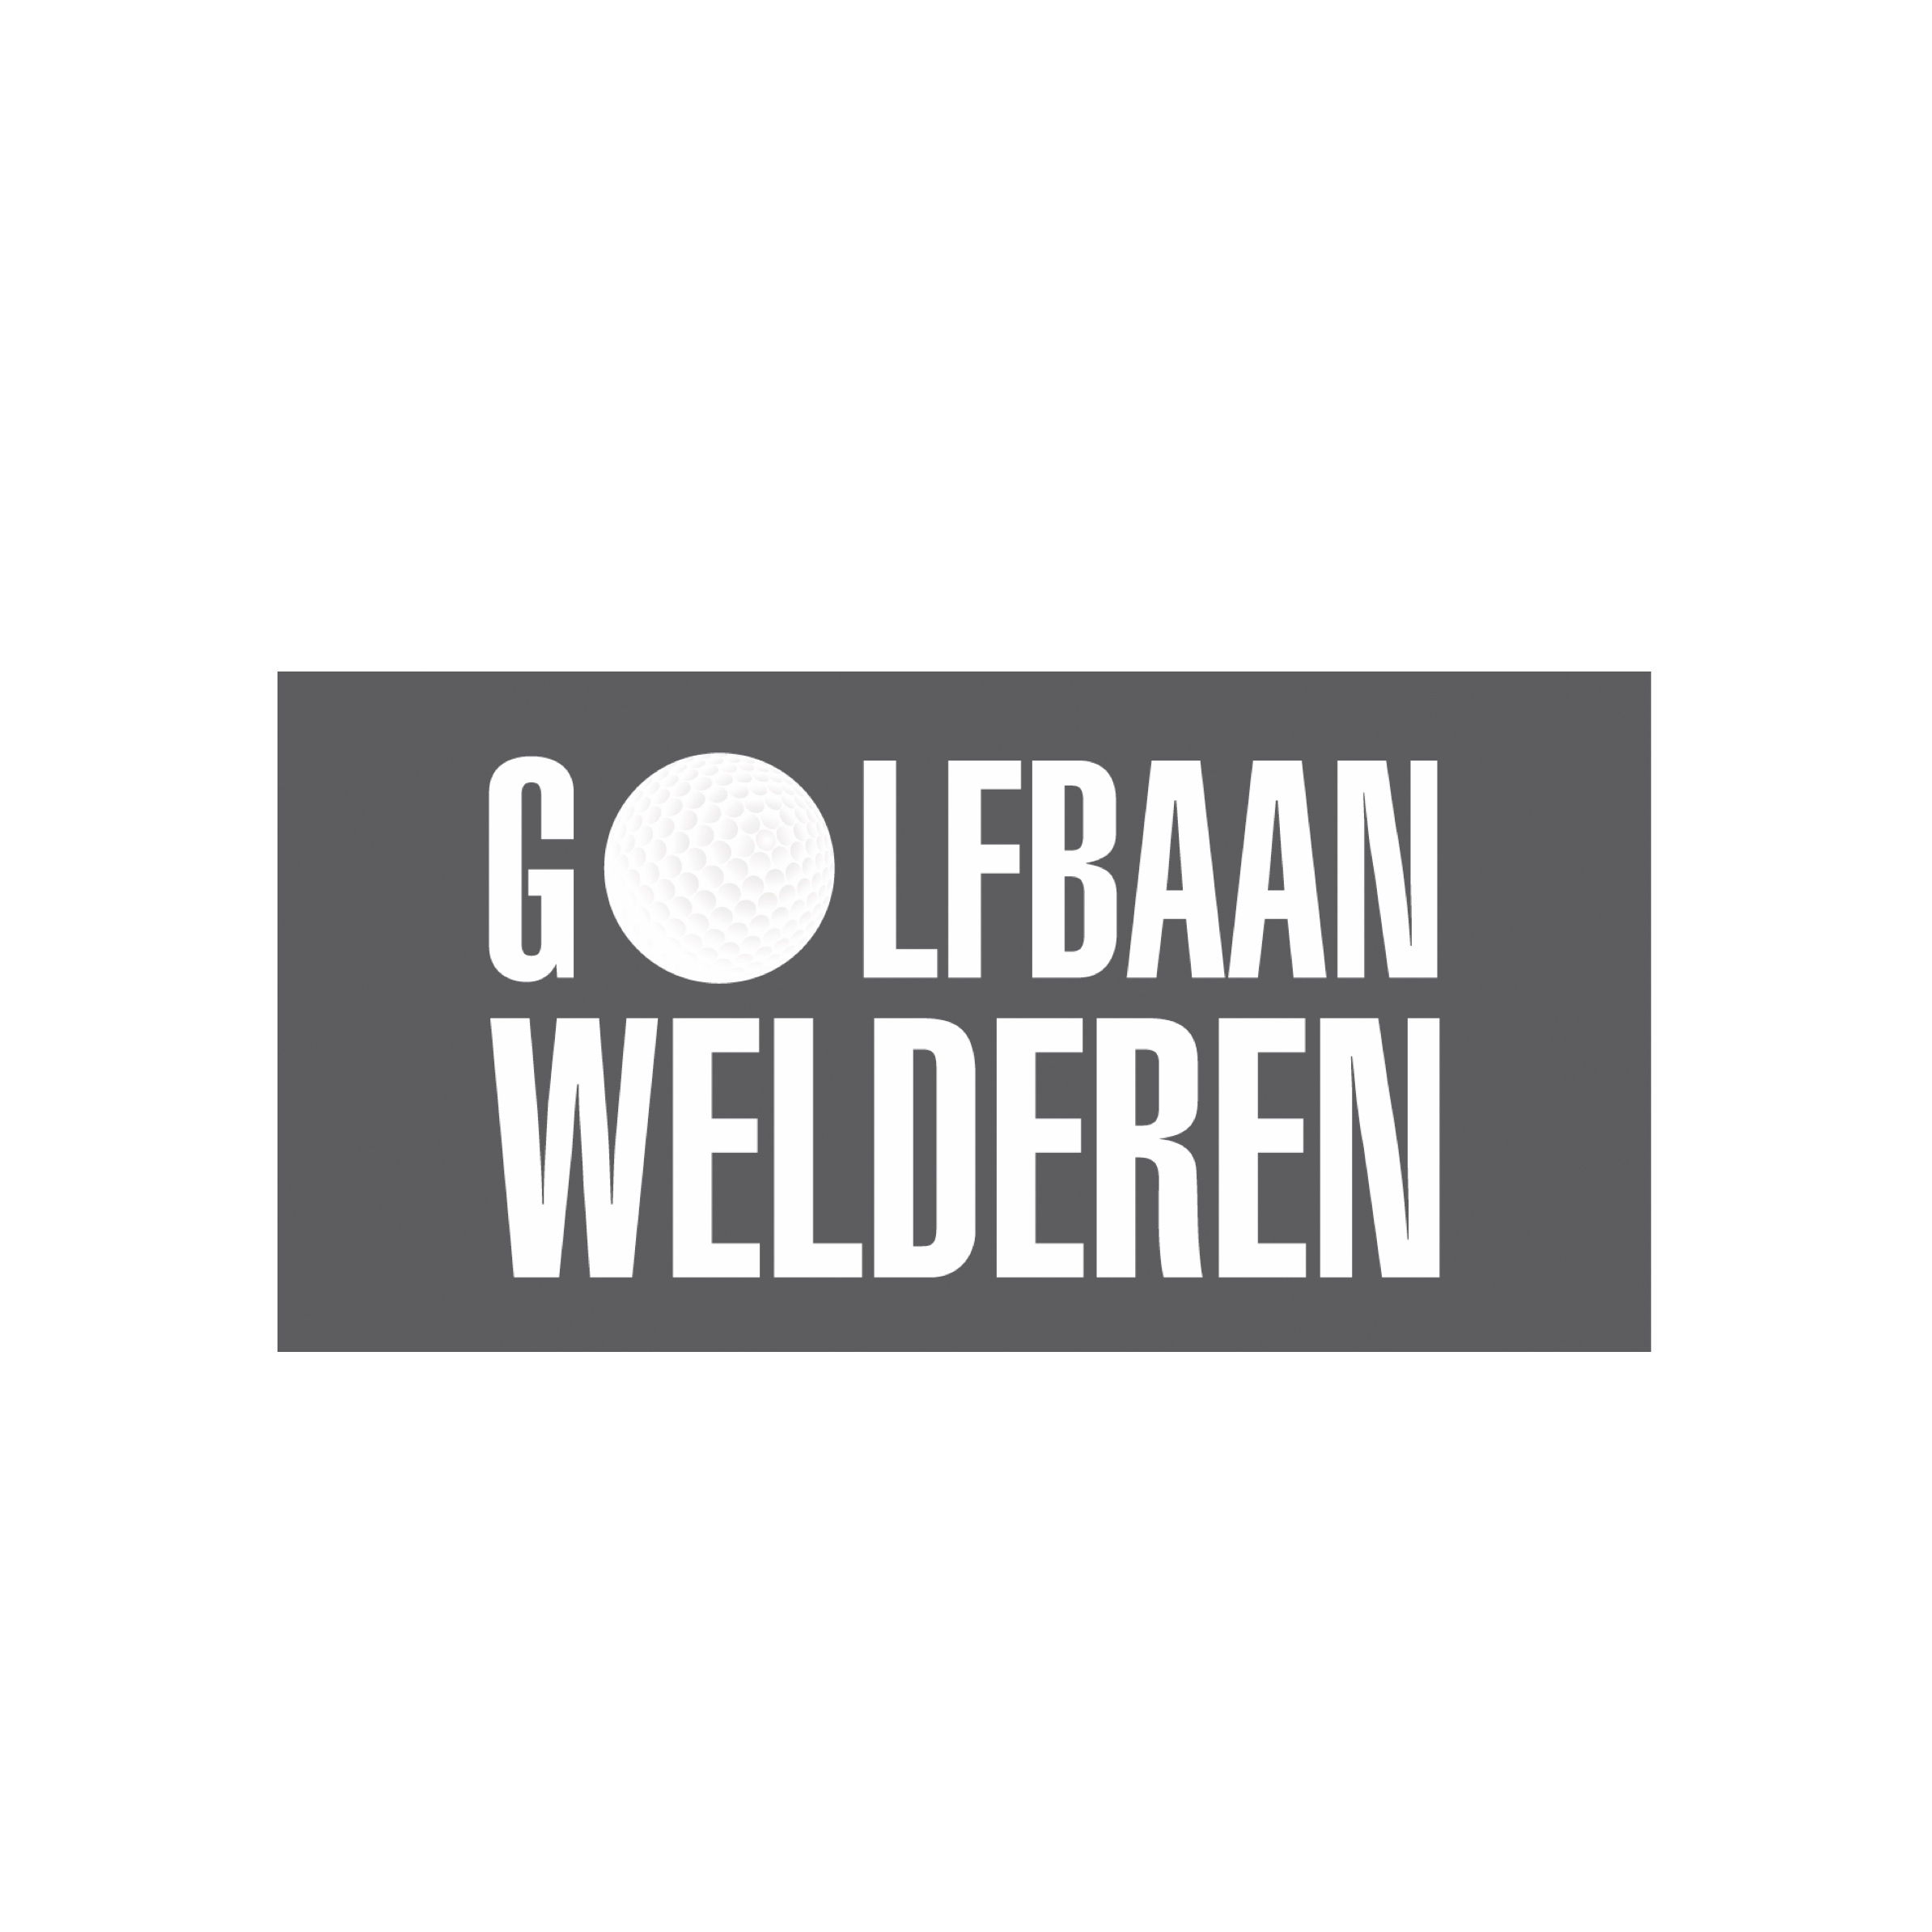 65. Welderen/NL (Landgoed Welderen)